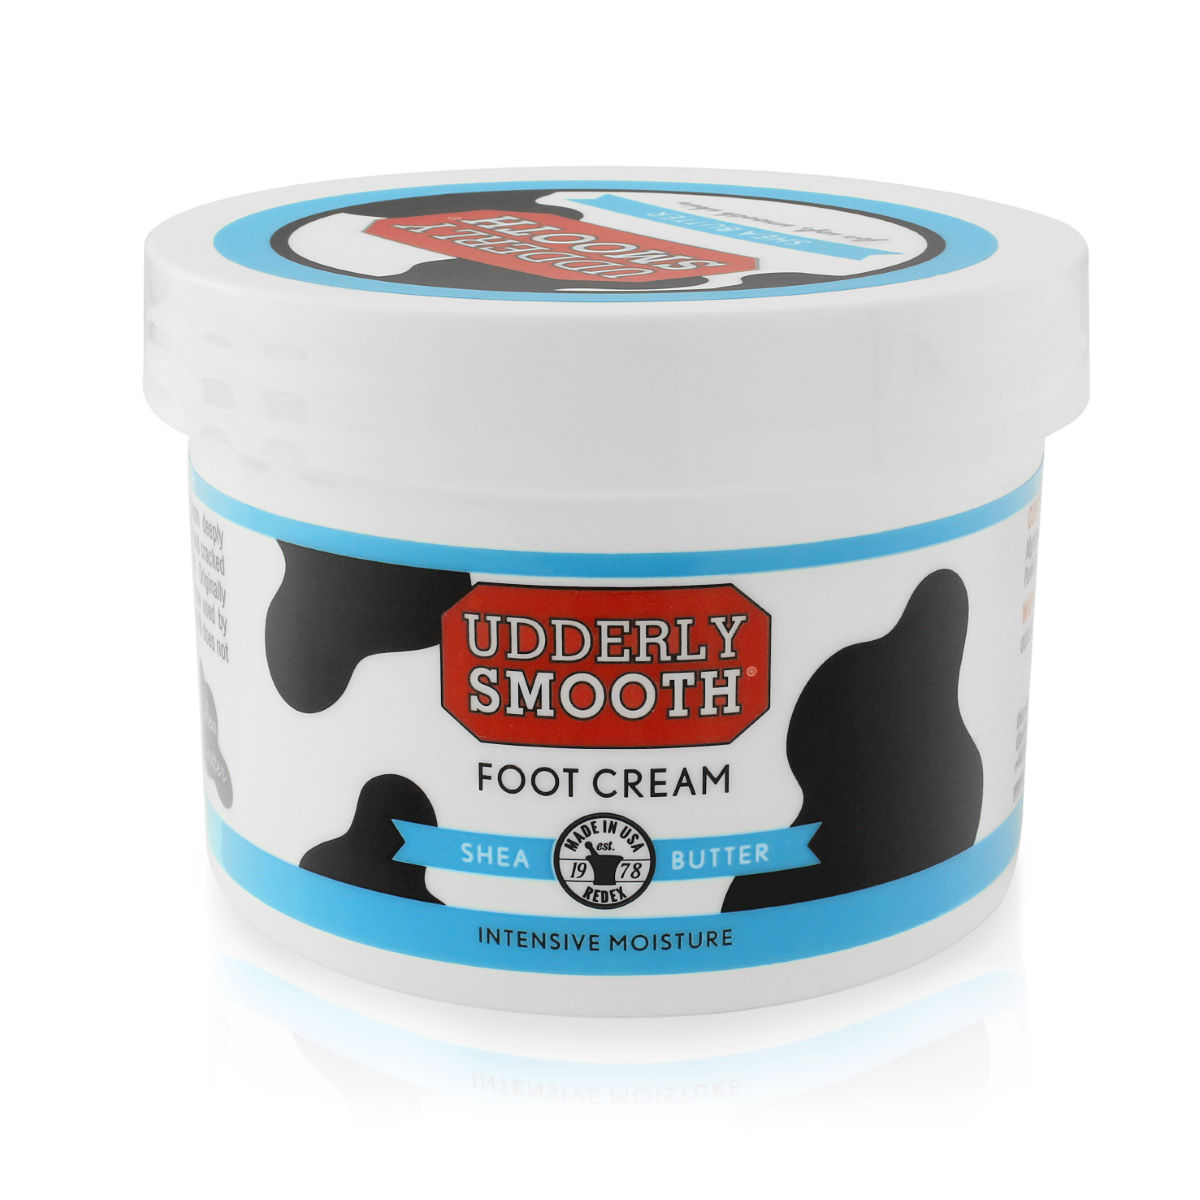 Crema para los pies Udderly Smooth (227 g) - Cremas hidratantes y cuidado de la piel